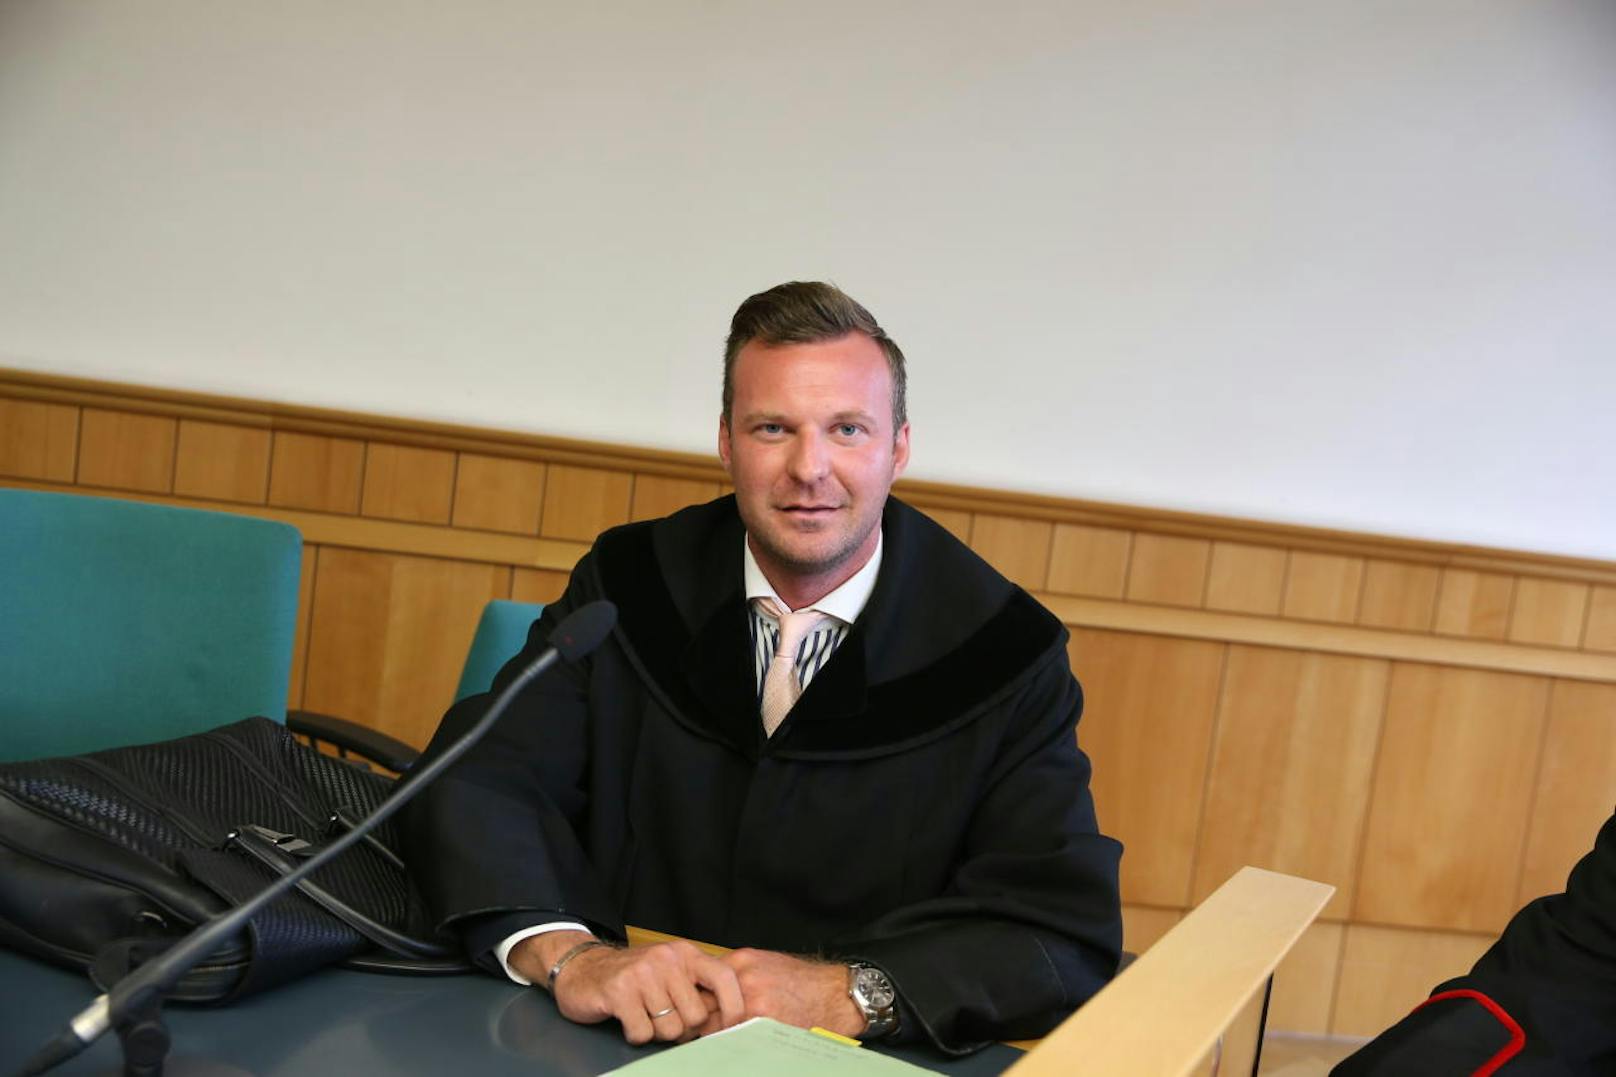 Anwalt Philipp Wolm verteidigt.